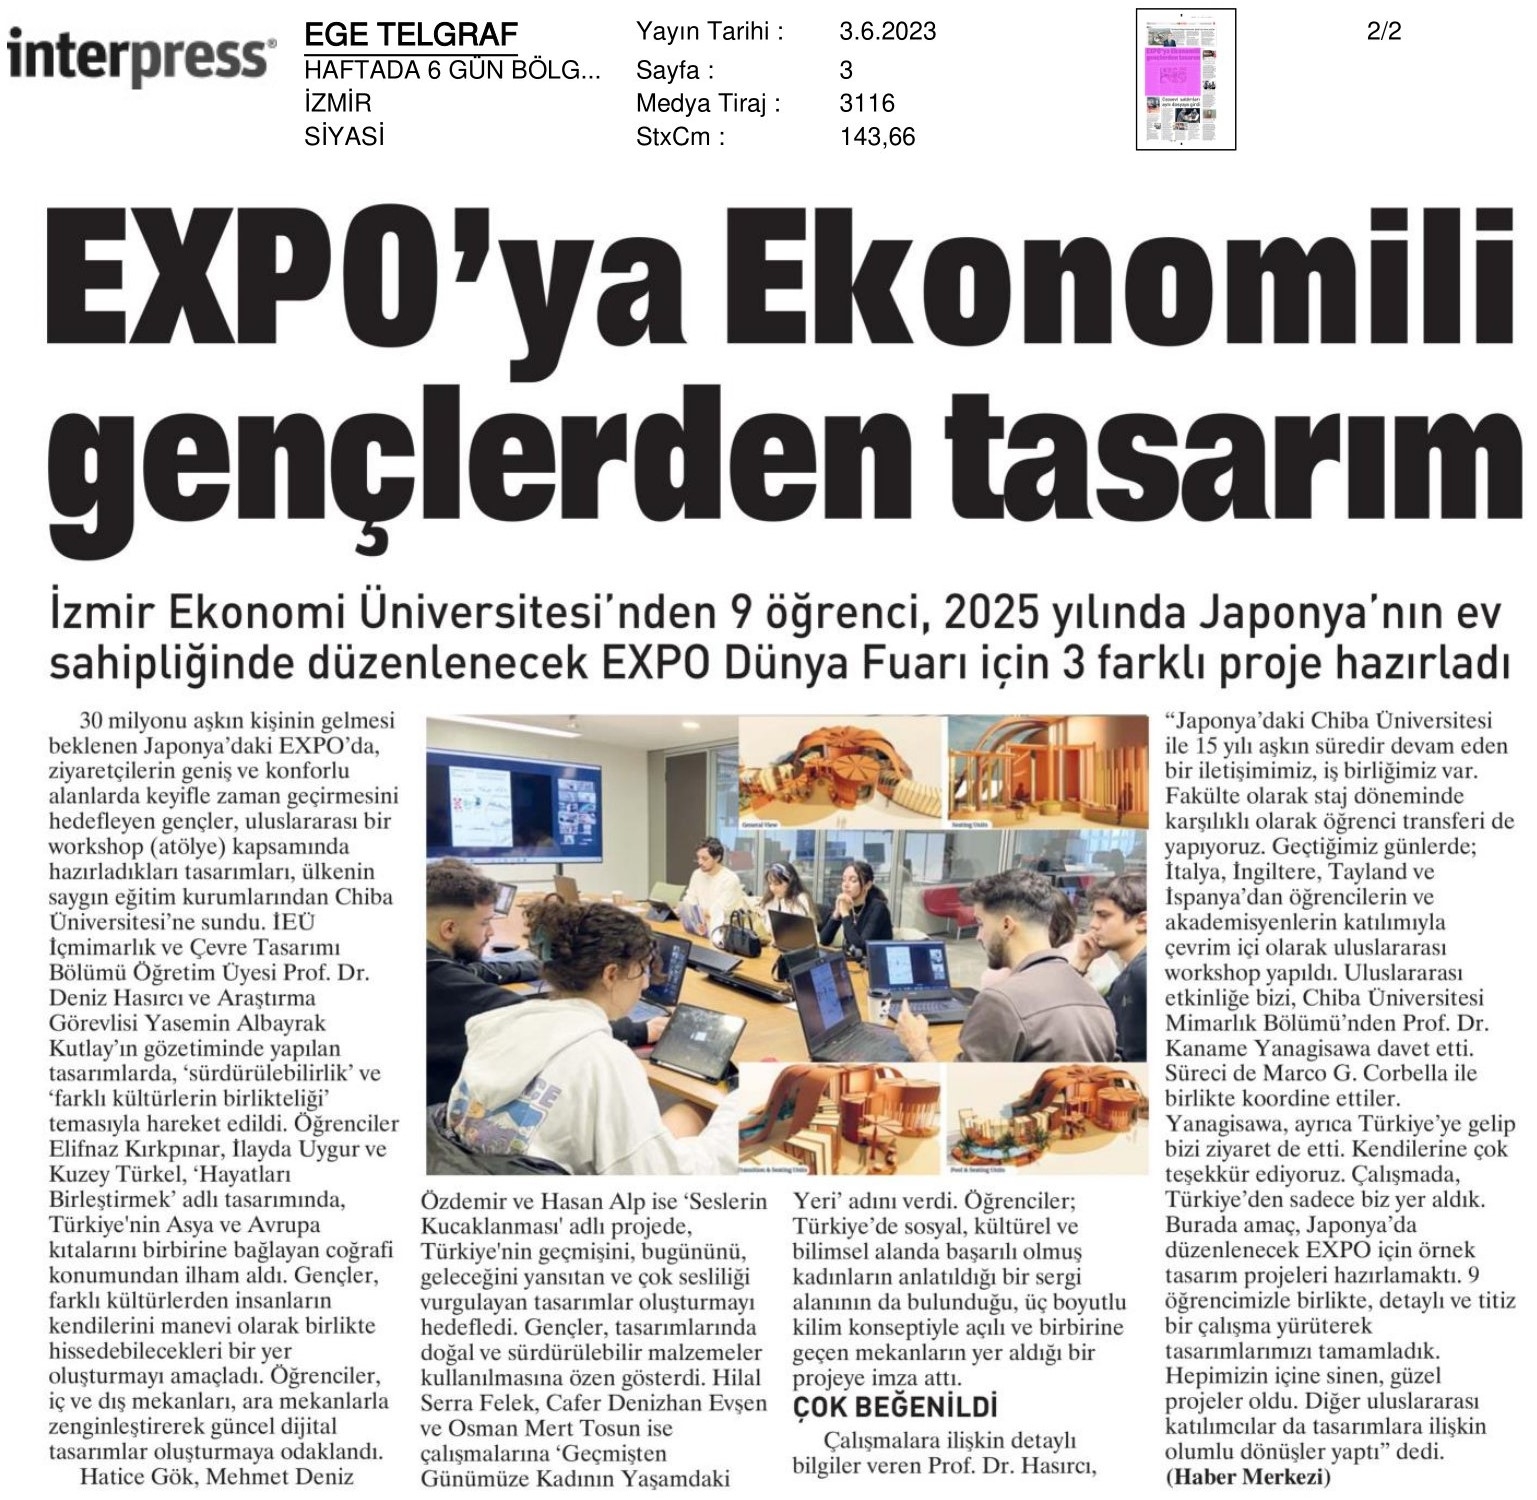 EXPO’ya ‘İzmirli’ tasarım